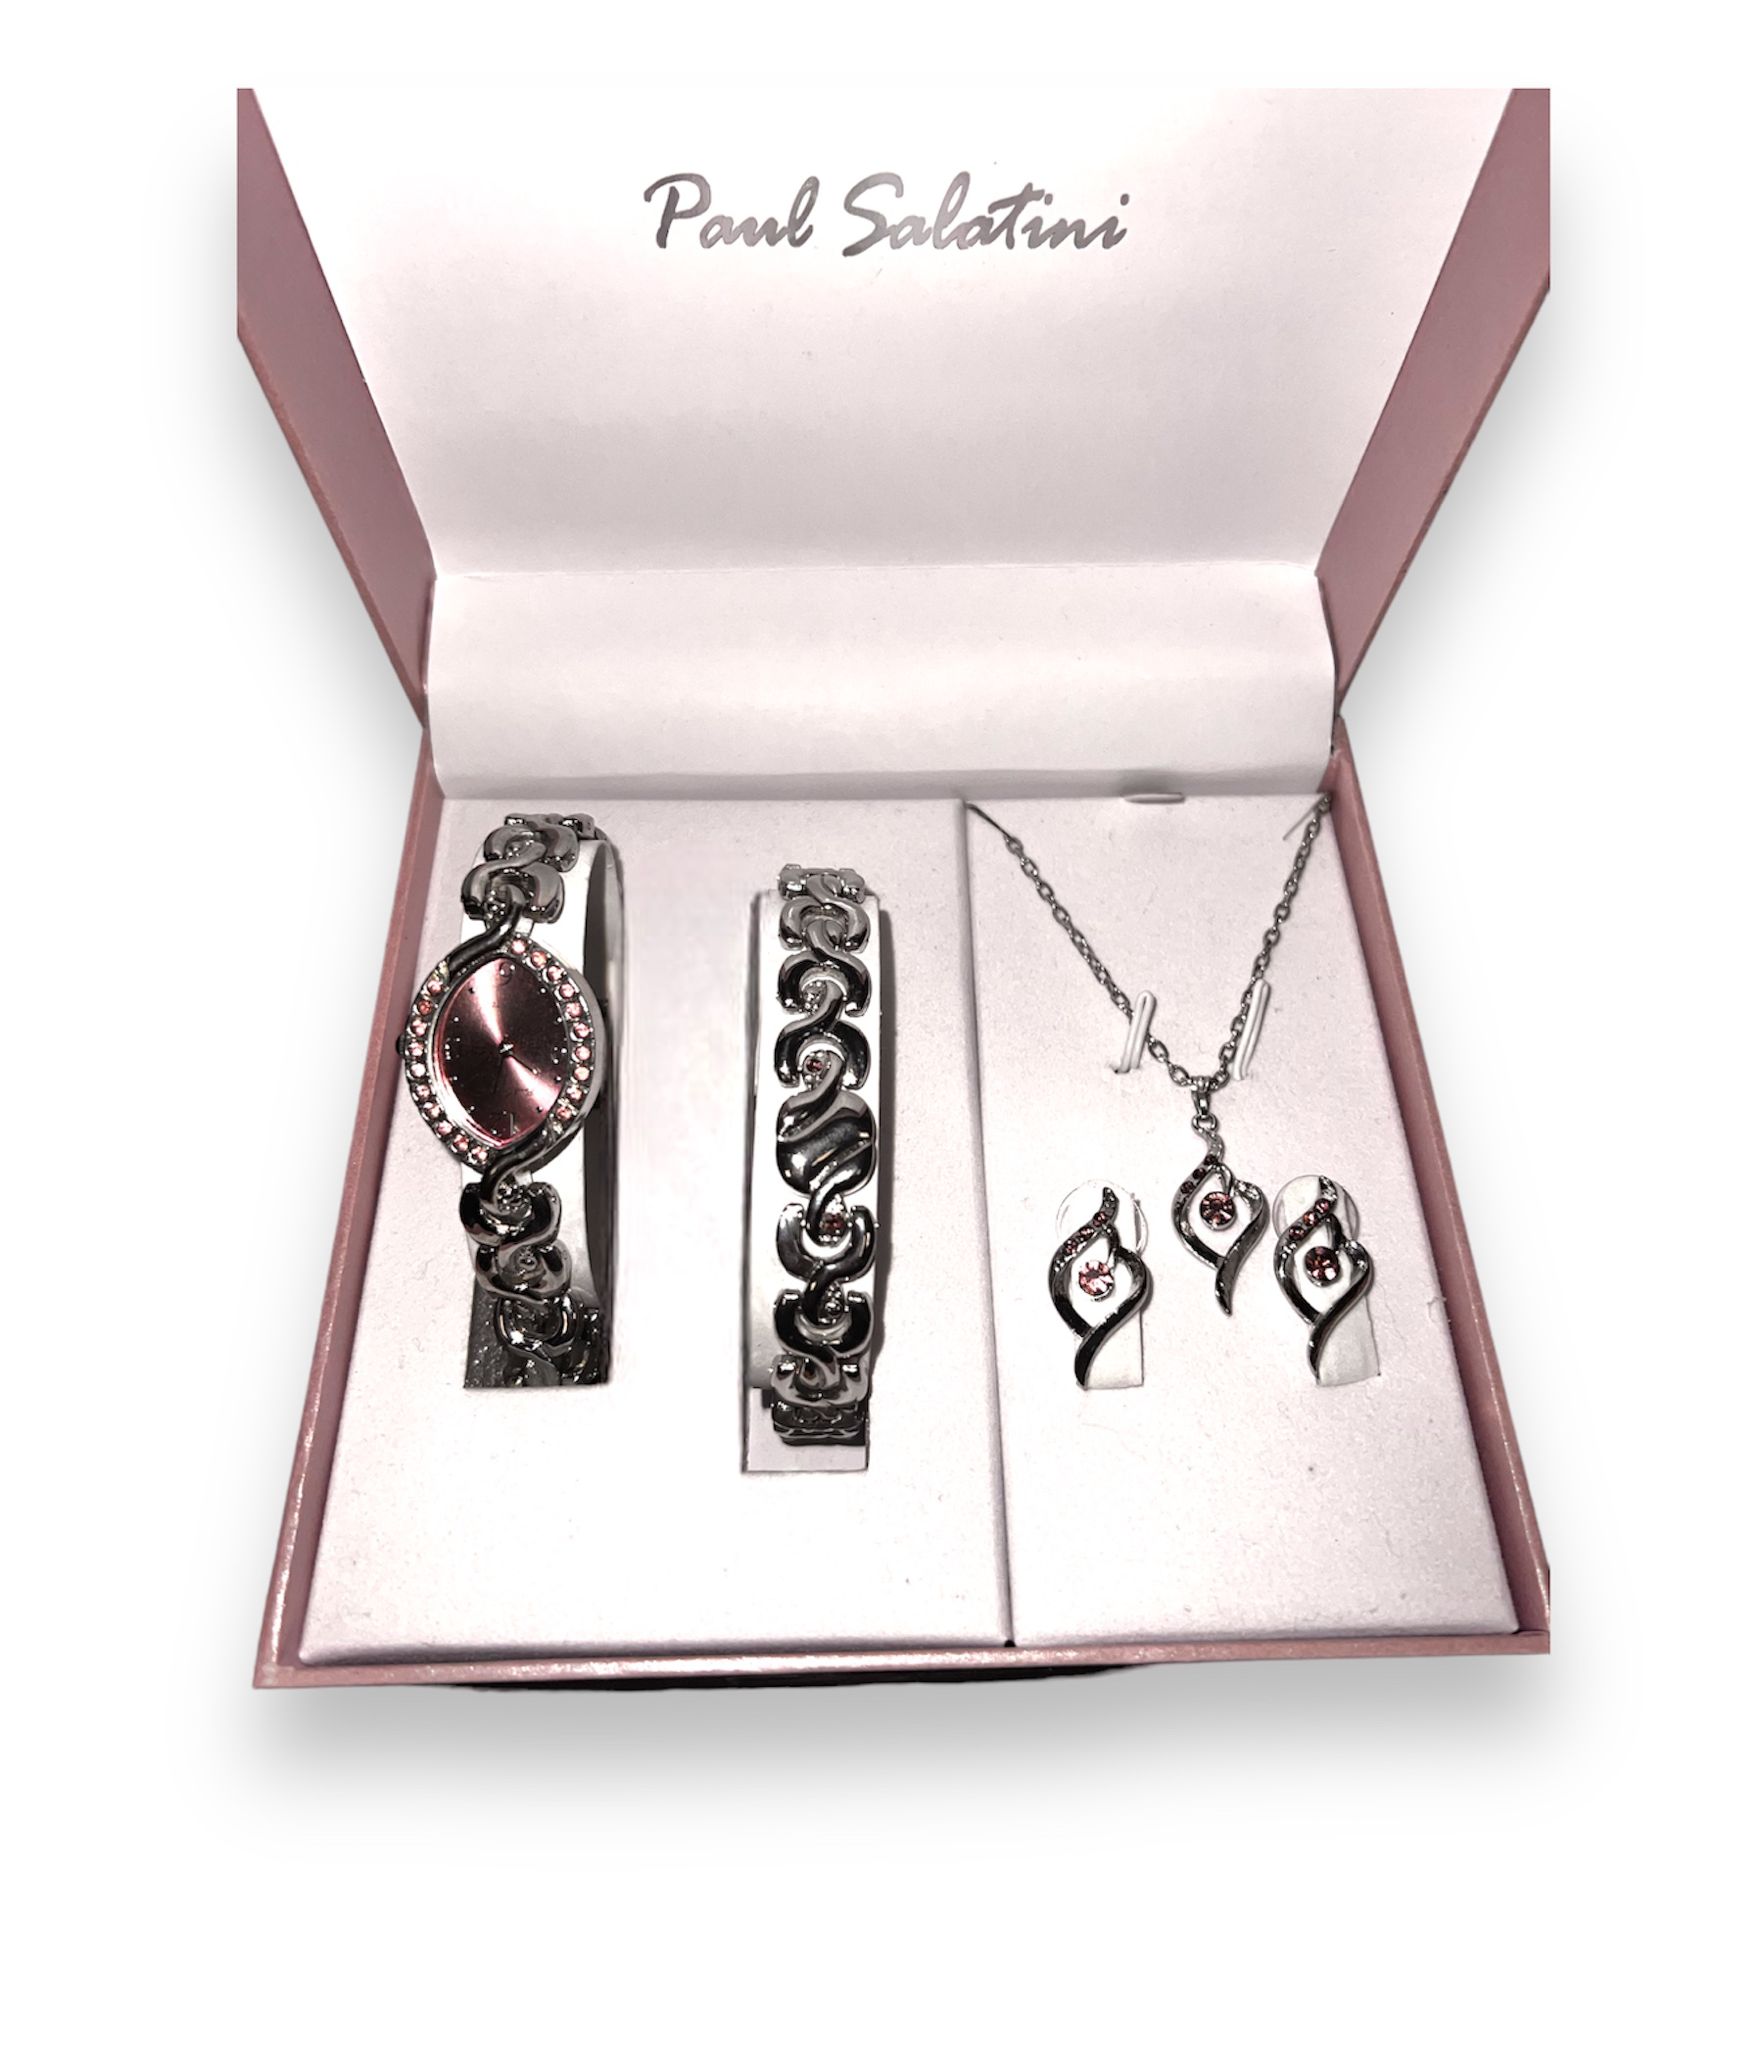 Paul Salatini jewellry set